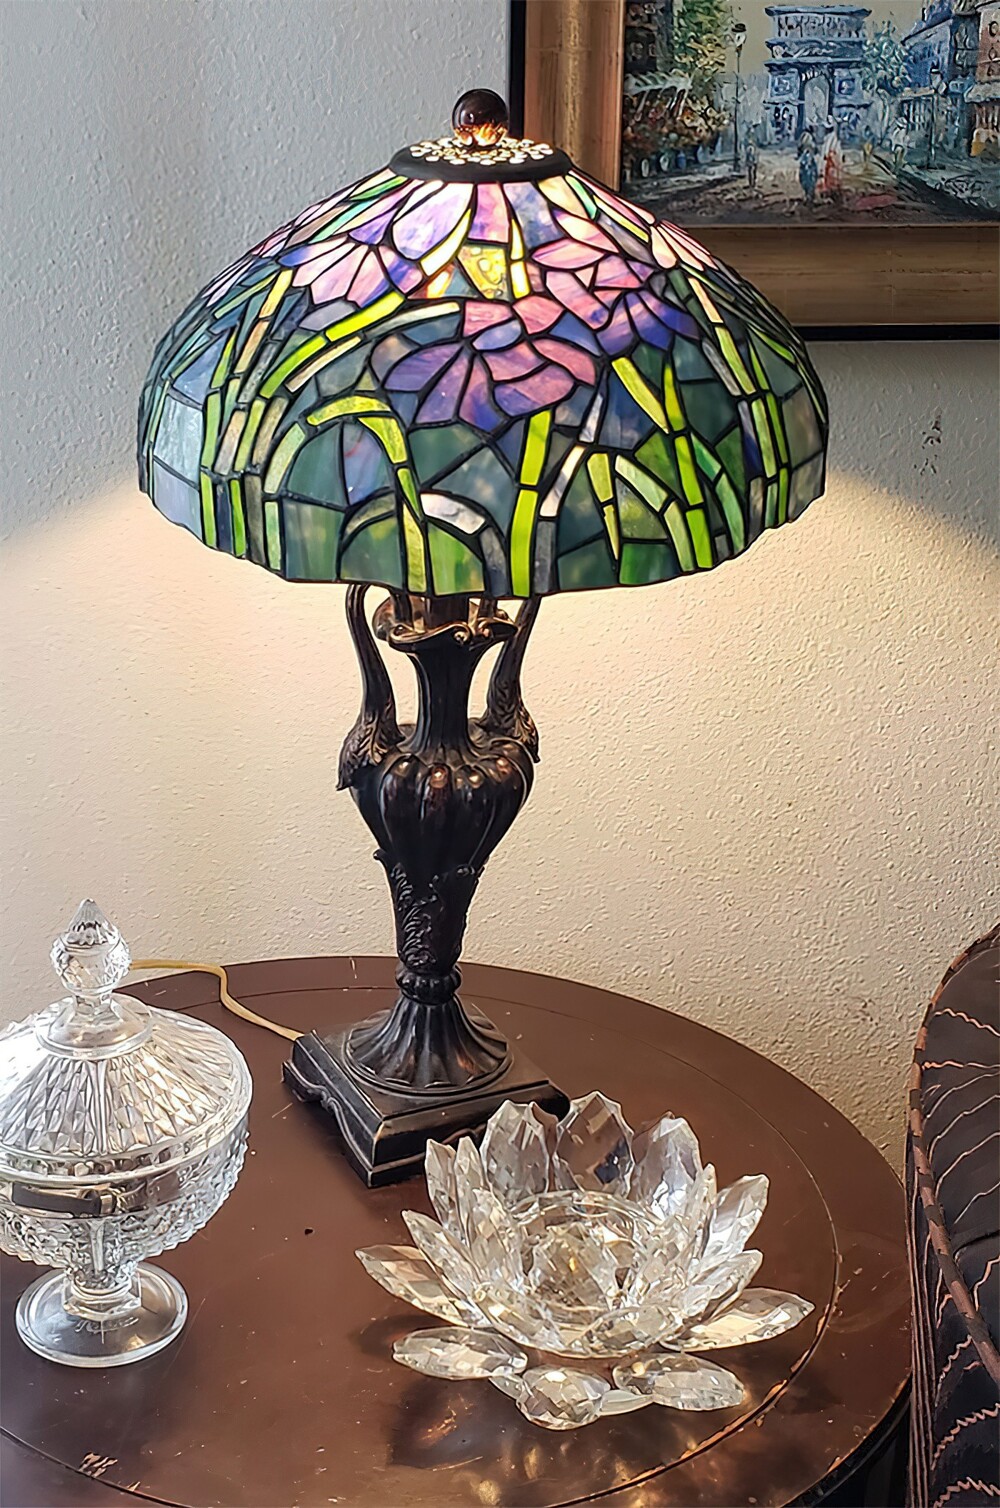 15. «Я просто ахнула, когда увидела эту лампу в магазине Goodwill в Корал-Спрингс, Флорида. И всего за 10 долларов! Я схватила её, хихикая, и побежала. Моя прелесть»